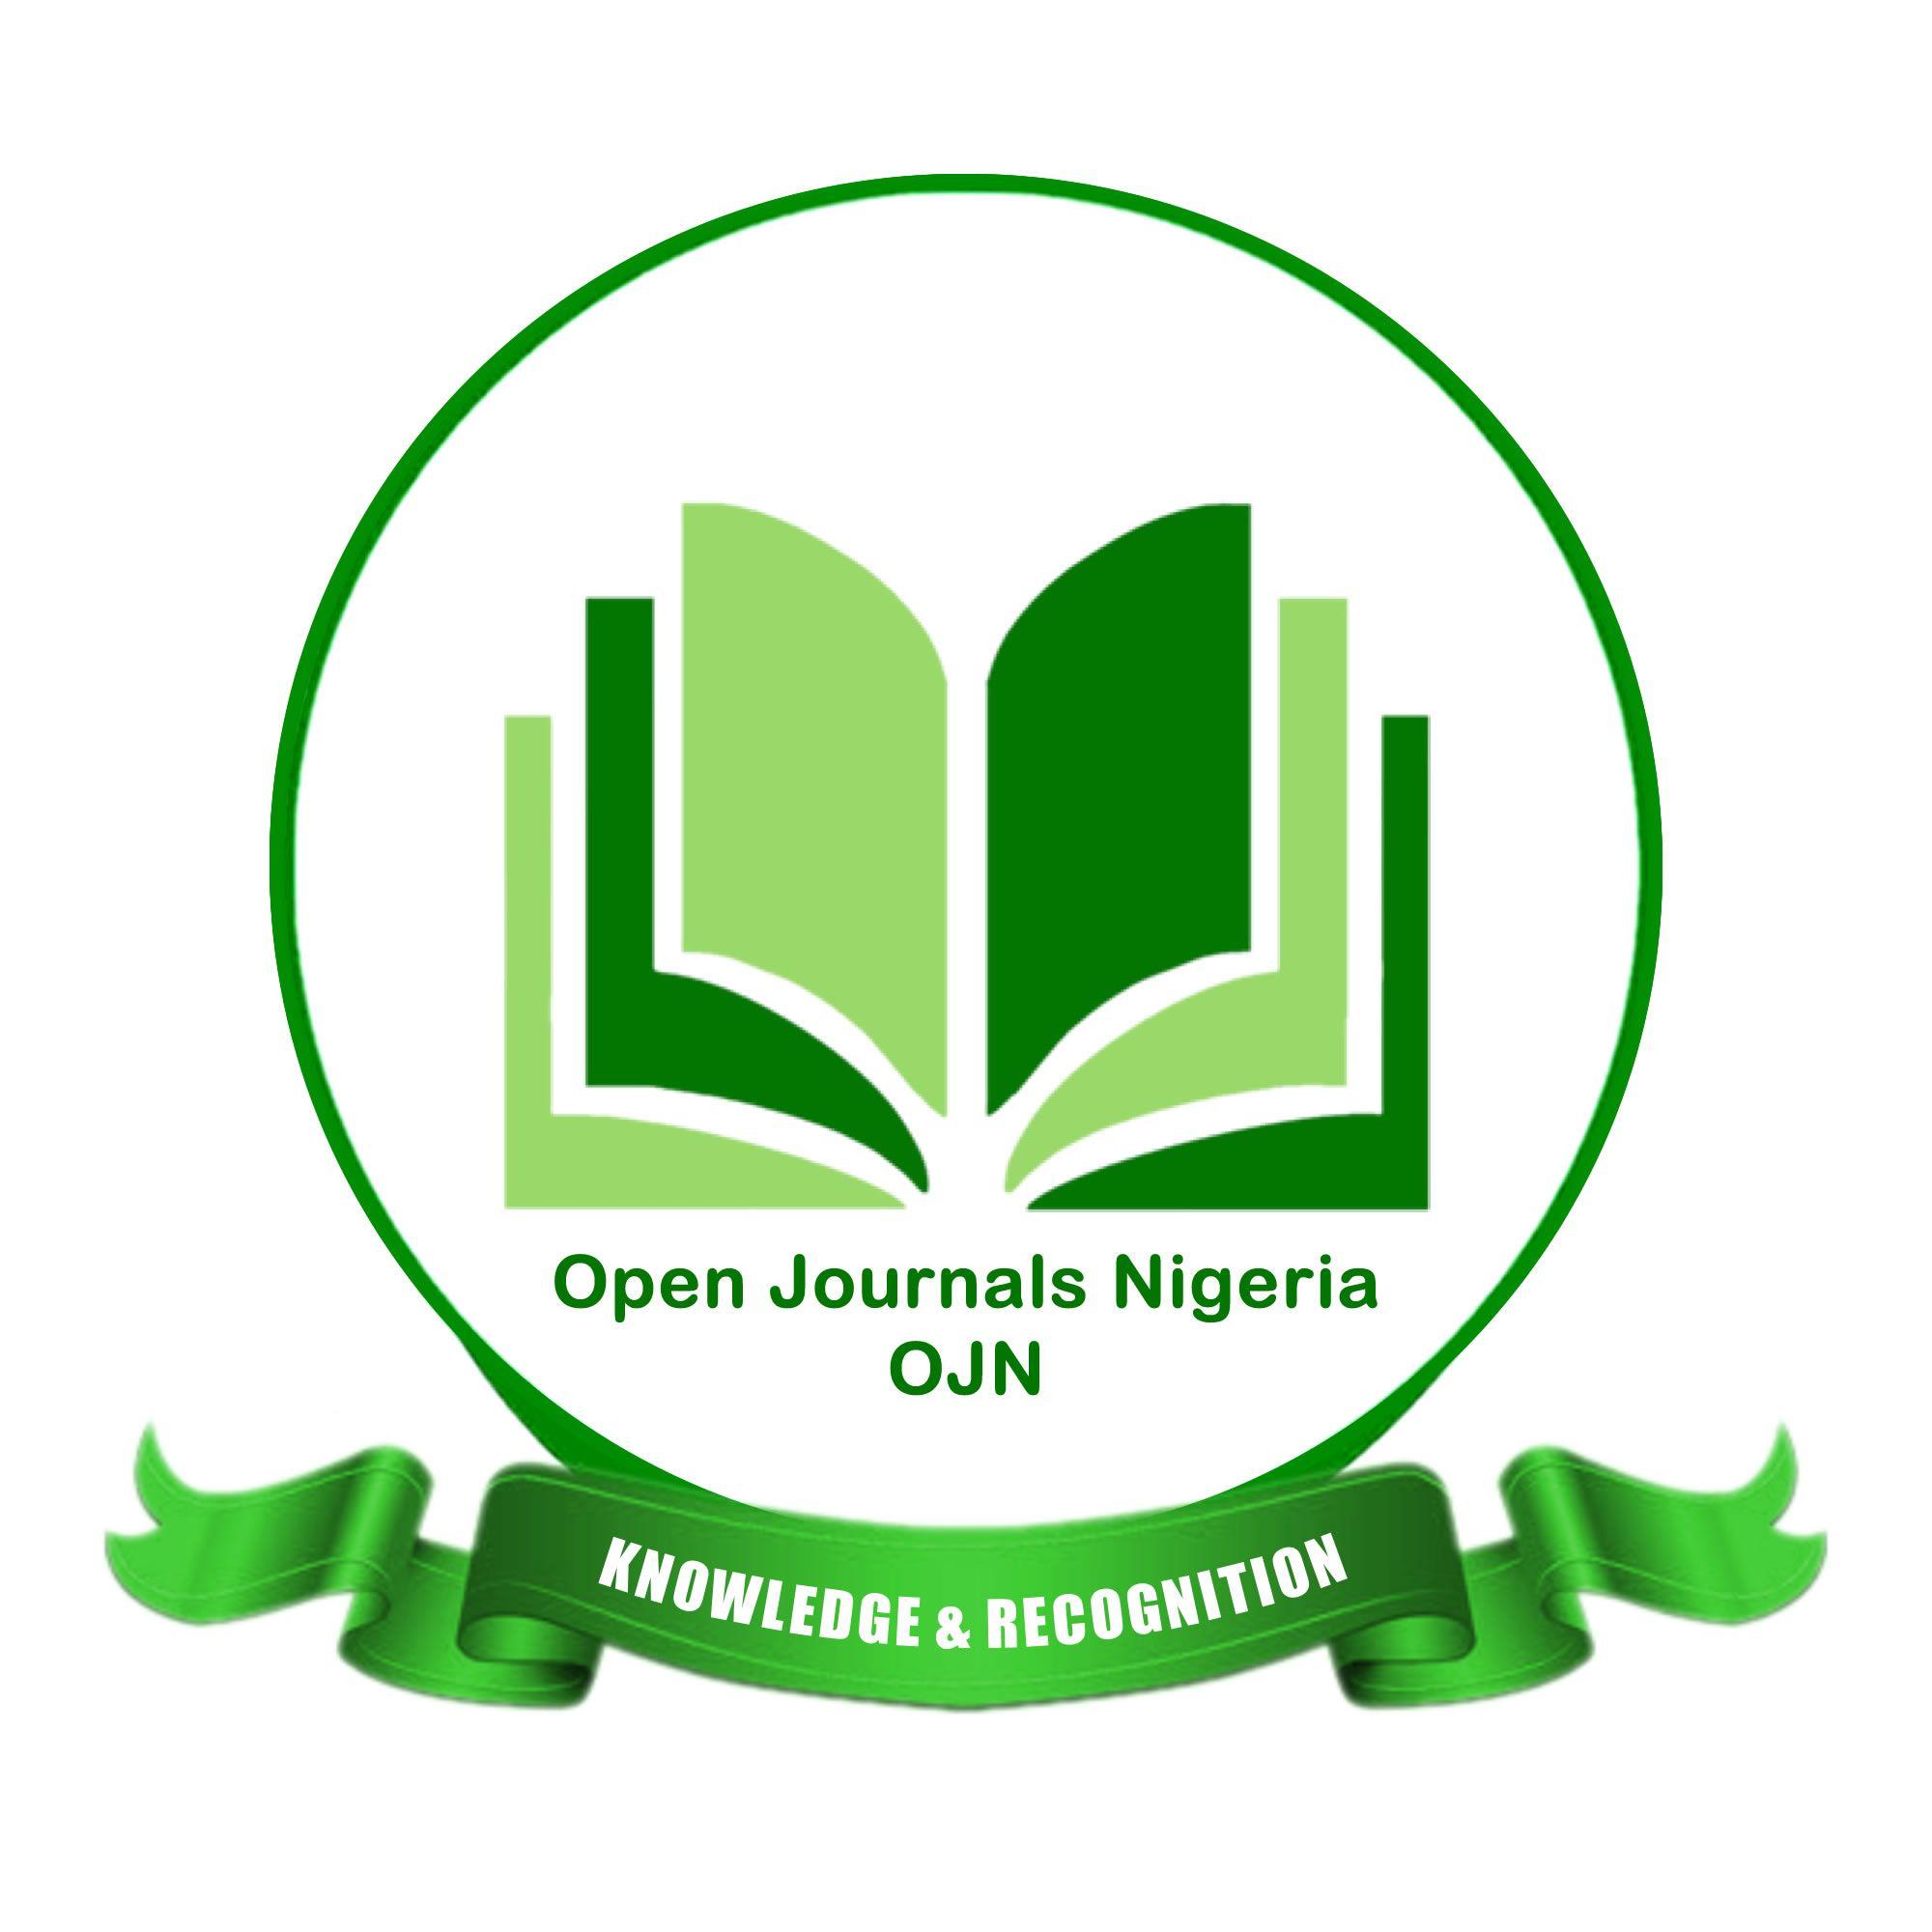 Nigeria Logo - Open Journals Nigeria Access Journals in Nigeria